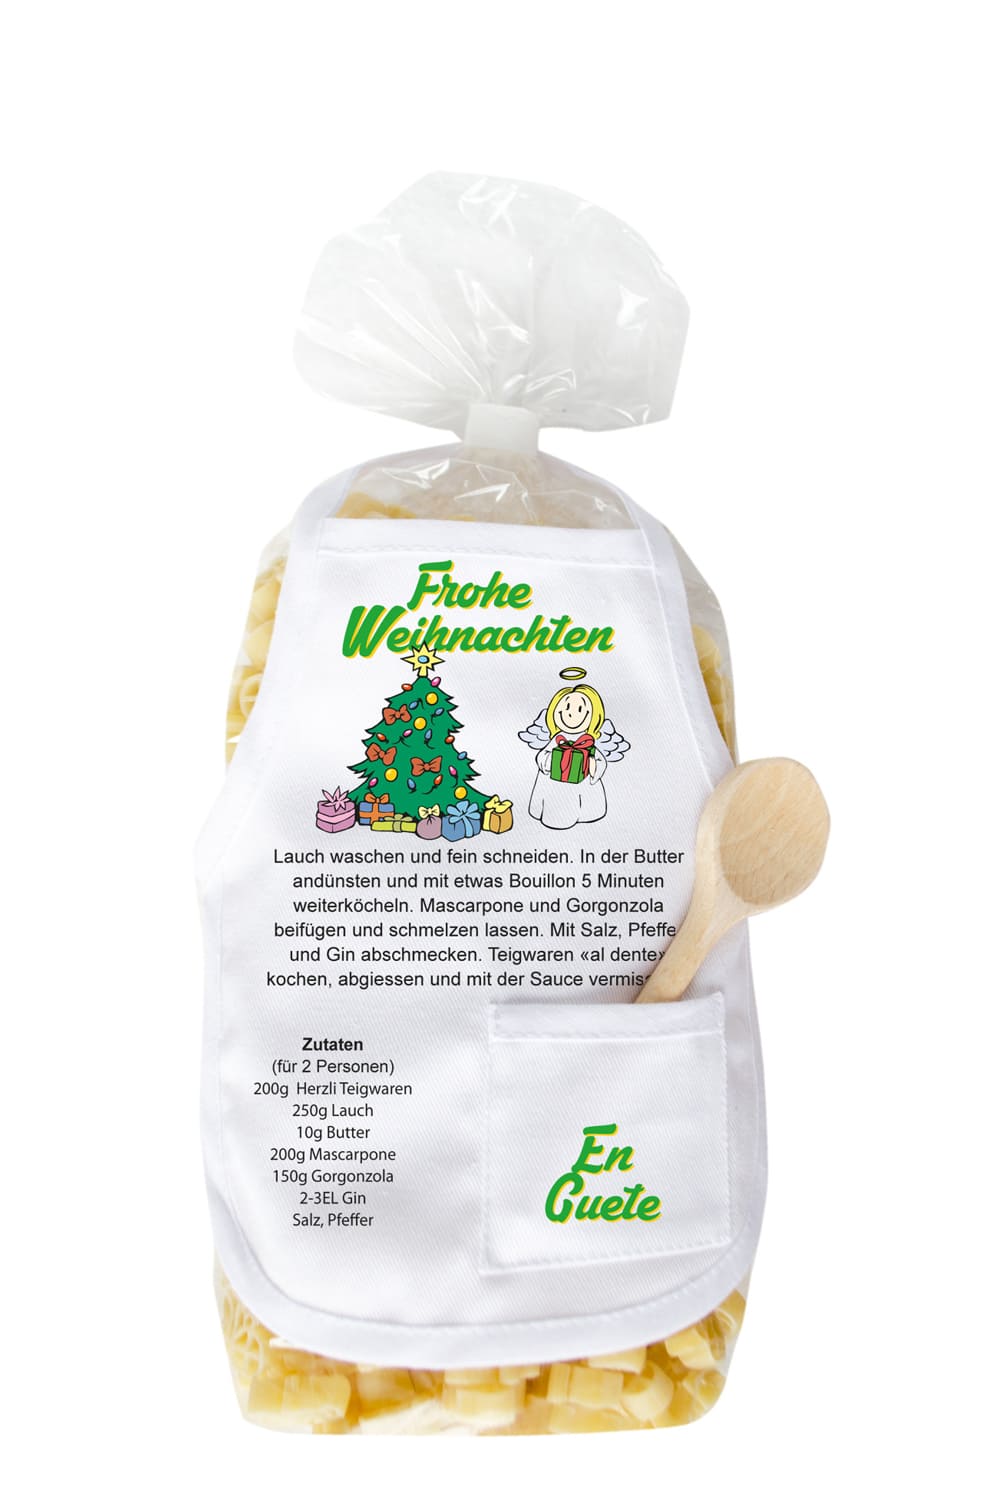 Die Pasta sind in Form kleiner Engel und in einer schoenen Verpackung mit einer Mini Kochschuerze. Ausserdem steht auf der laessigen Kochschuerze ein feines Rezept zum Nachkochen und der Spruch: Frohe Weihnachten und eine weihnachtliche Abbildung mit einem Tannebaum. Einfach ein grossartiges Weihnachtsgeschenk. 